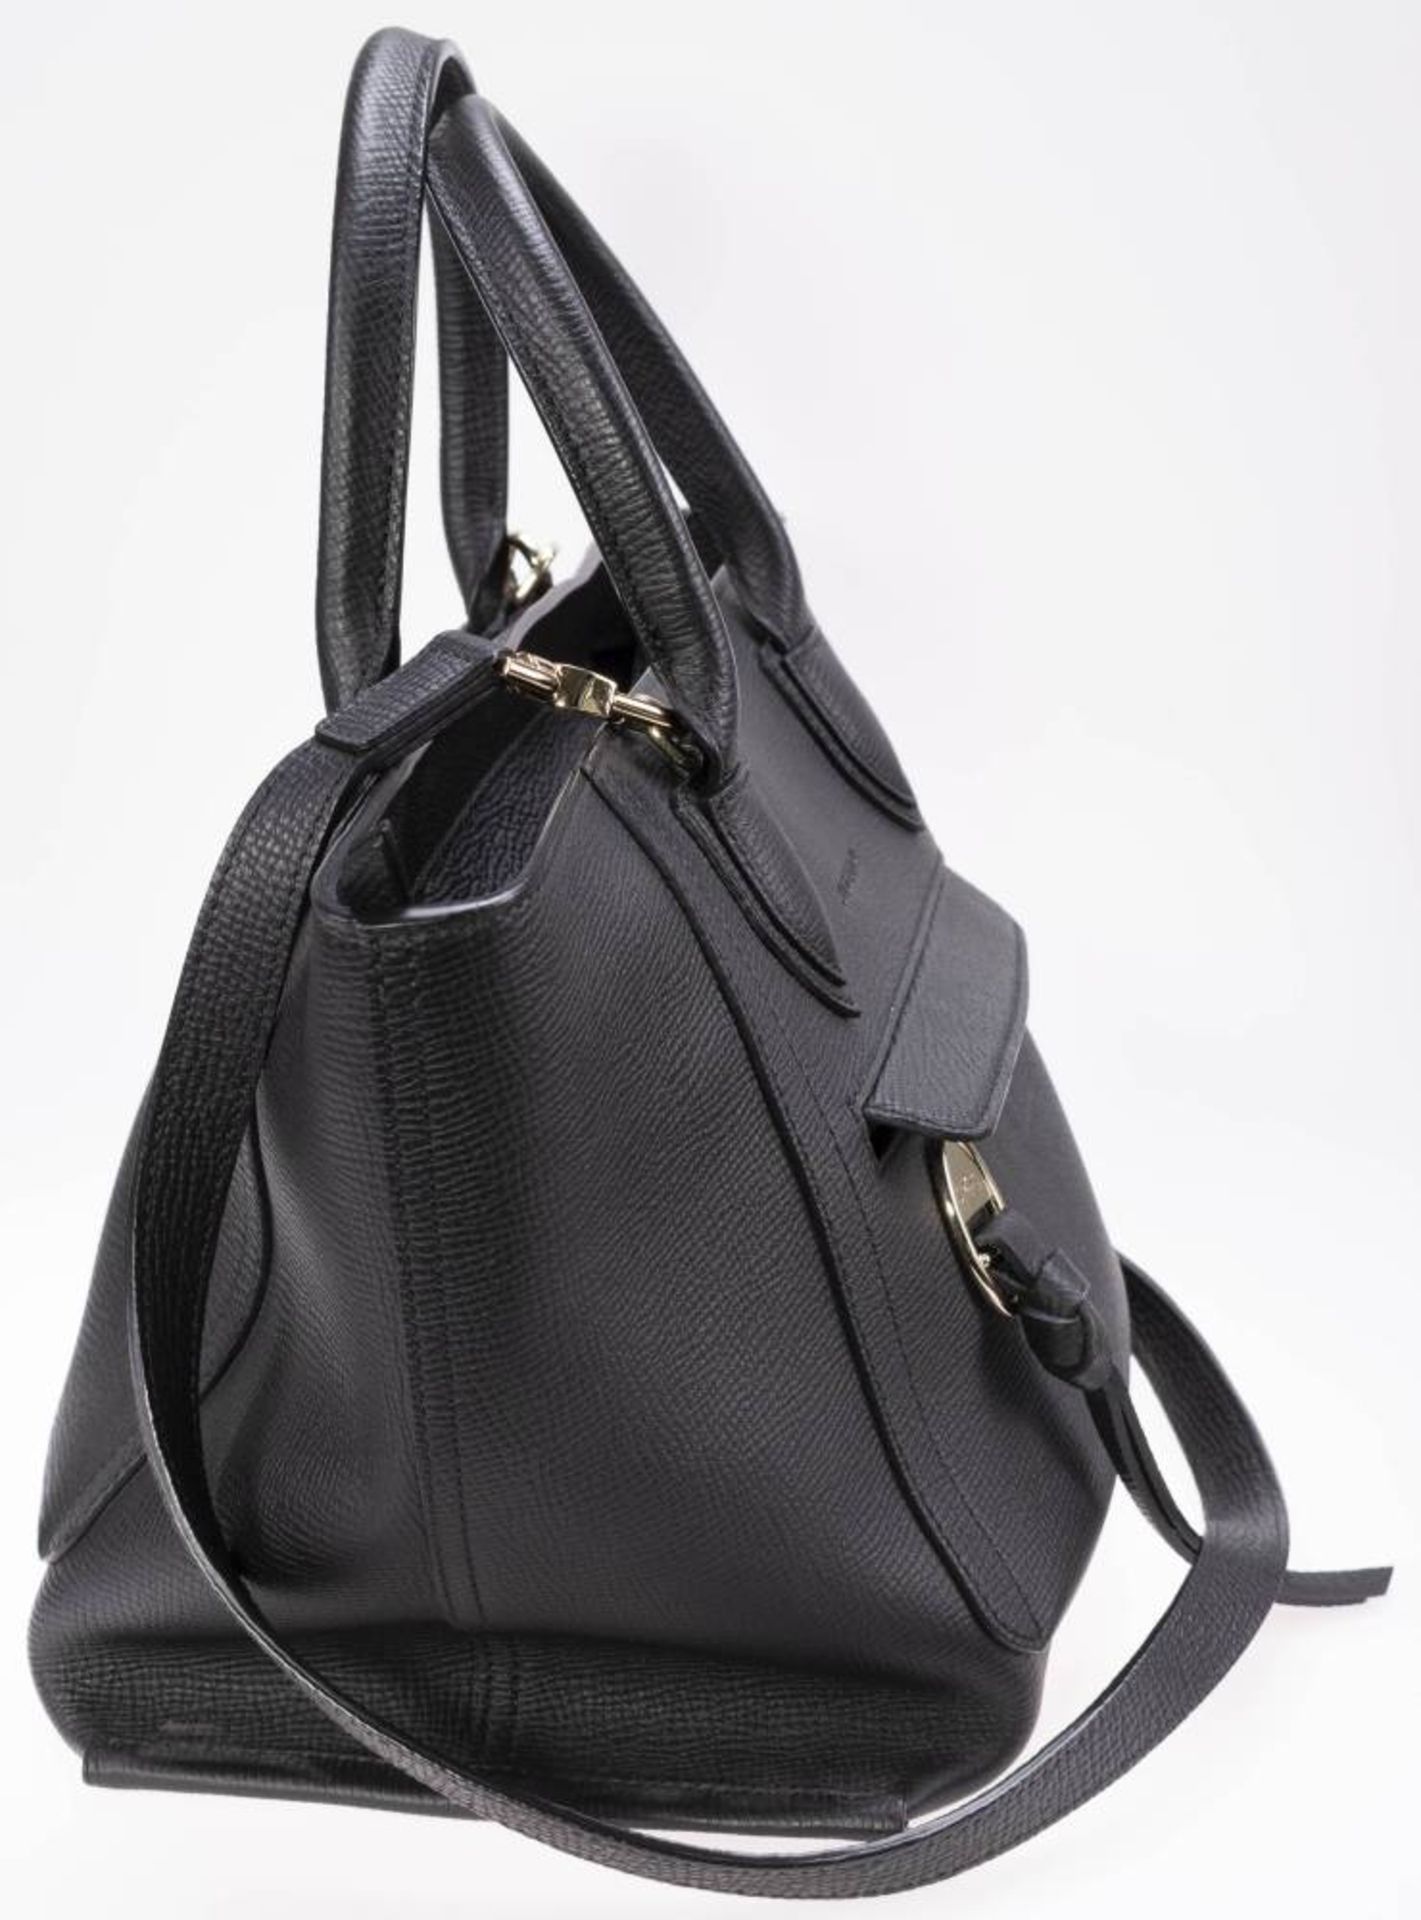 Longchamp Shopper, schwarzes Leder, goldfarbenes Metall, Außentasche mit Reißverschluss, innen - Bild 3 aus 6